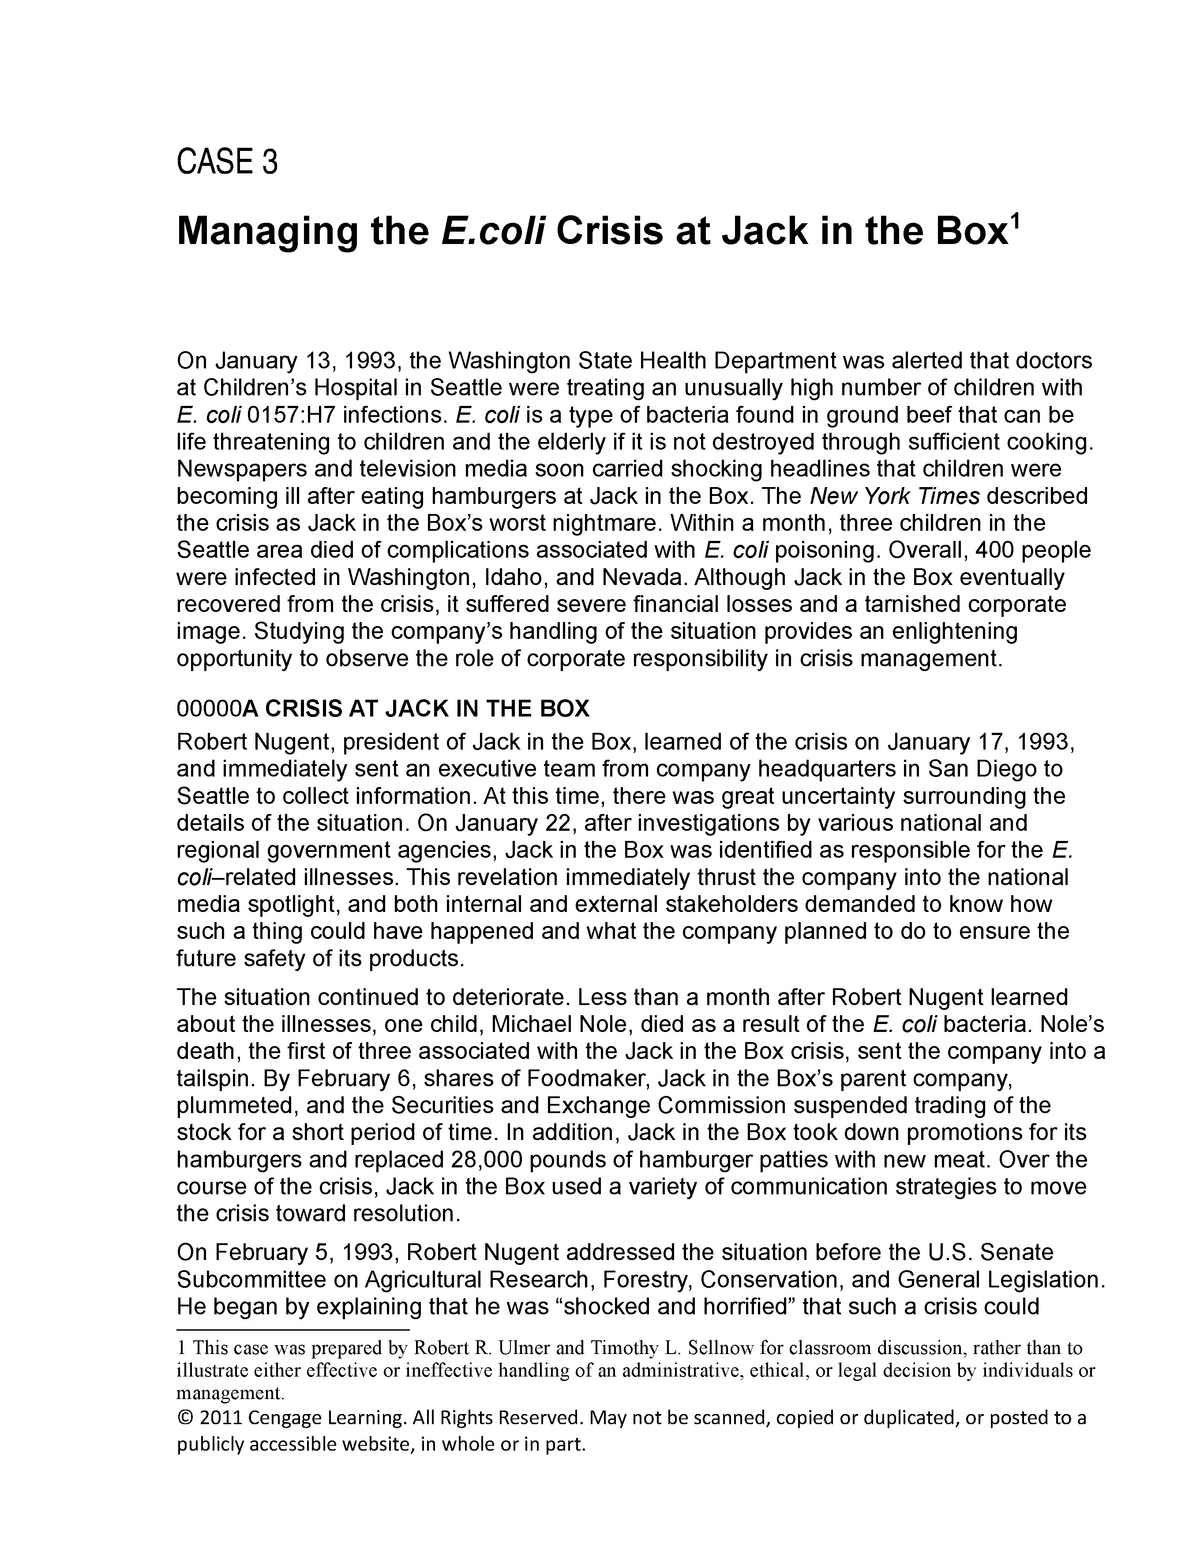 case study jack in the box e. coli crisis